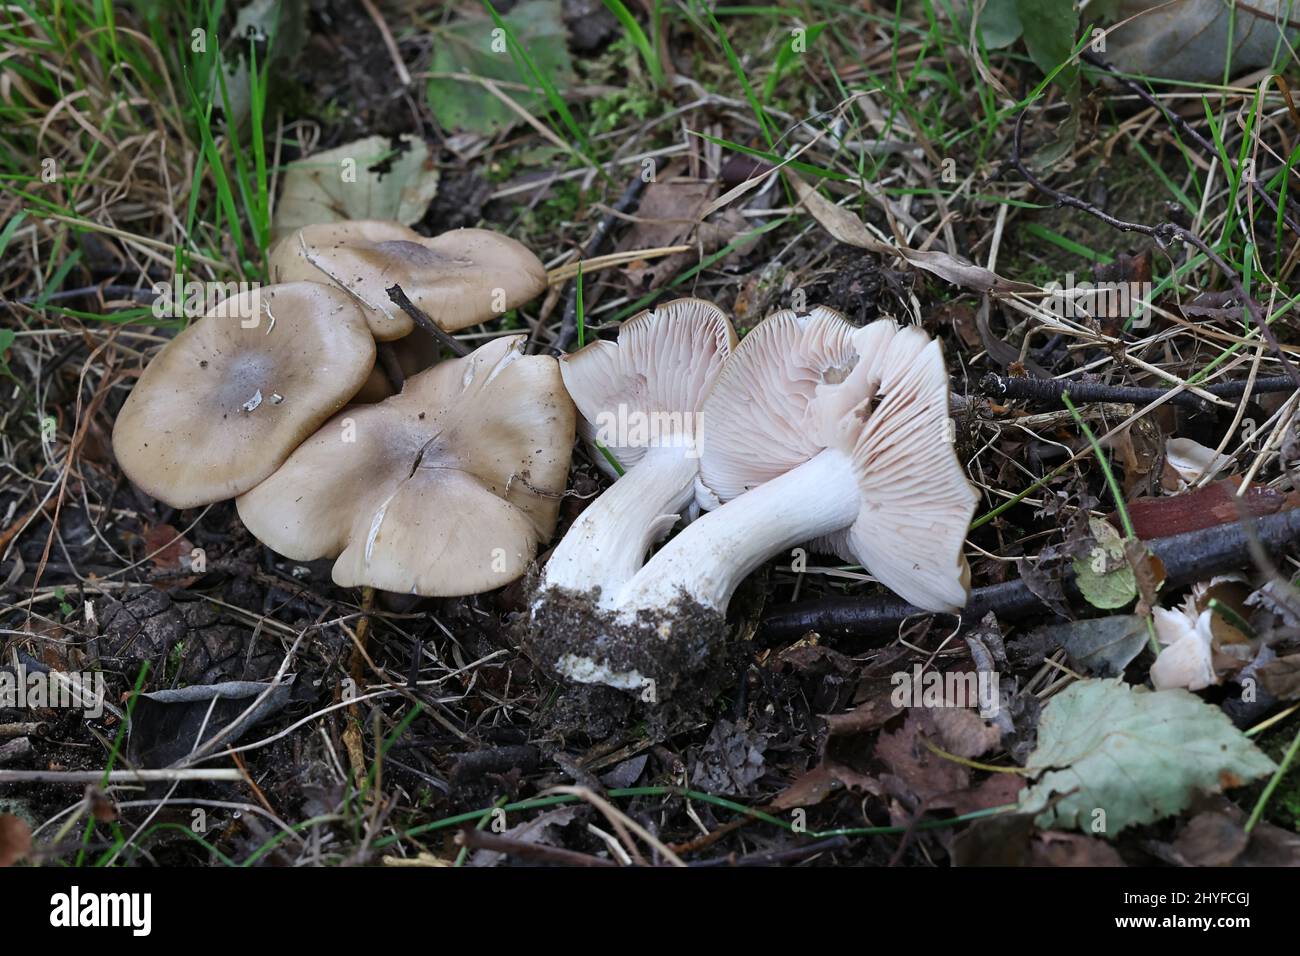 Entoloma clypeatum, connu sous le nom de Shield Pinkgill, champignon sauvage de Finlande Banque D'Images